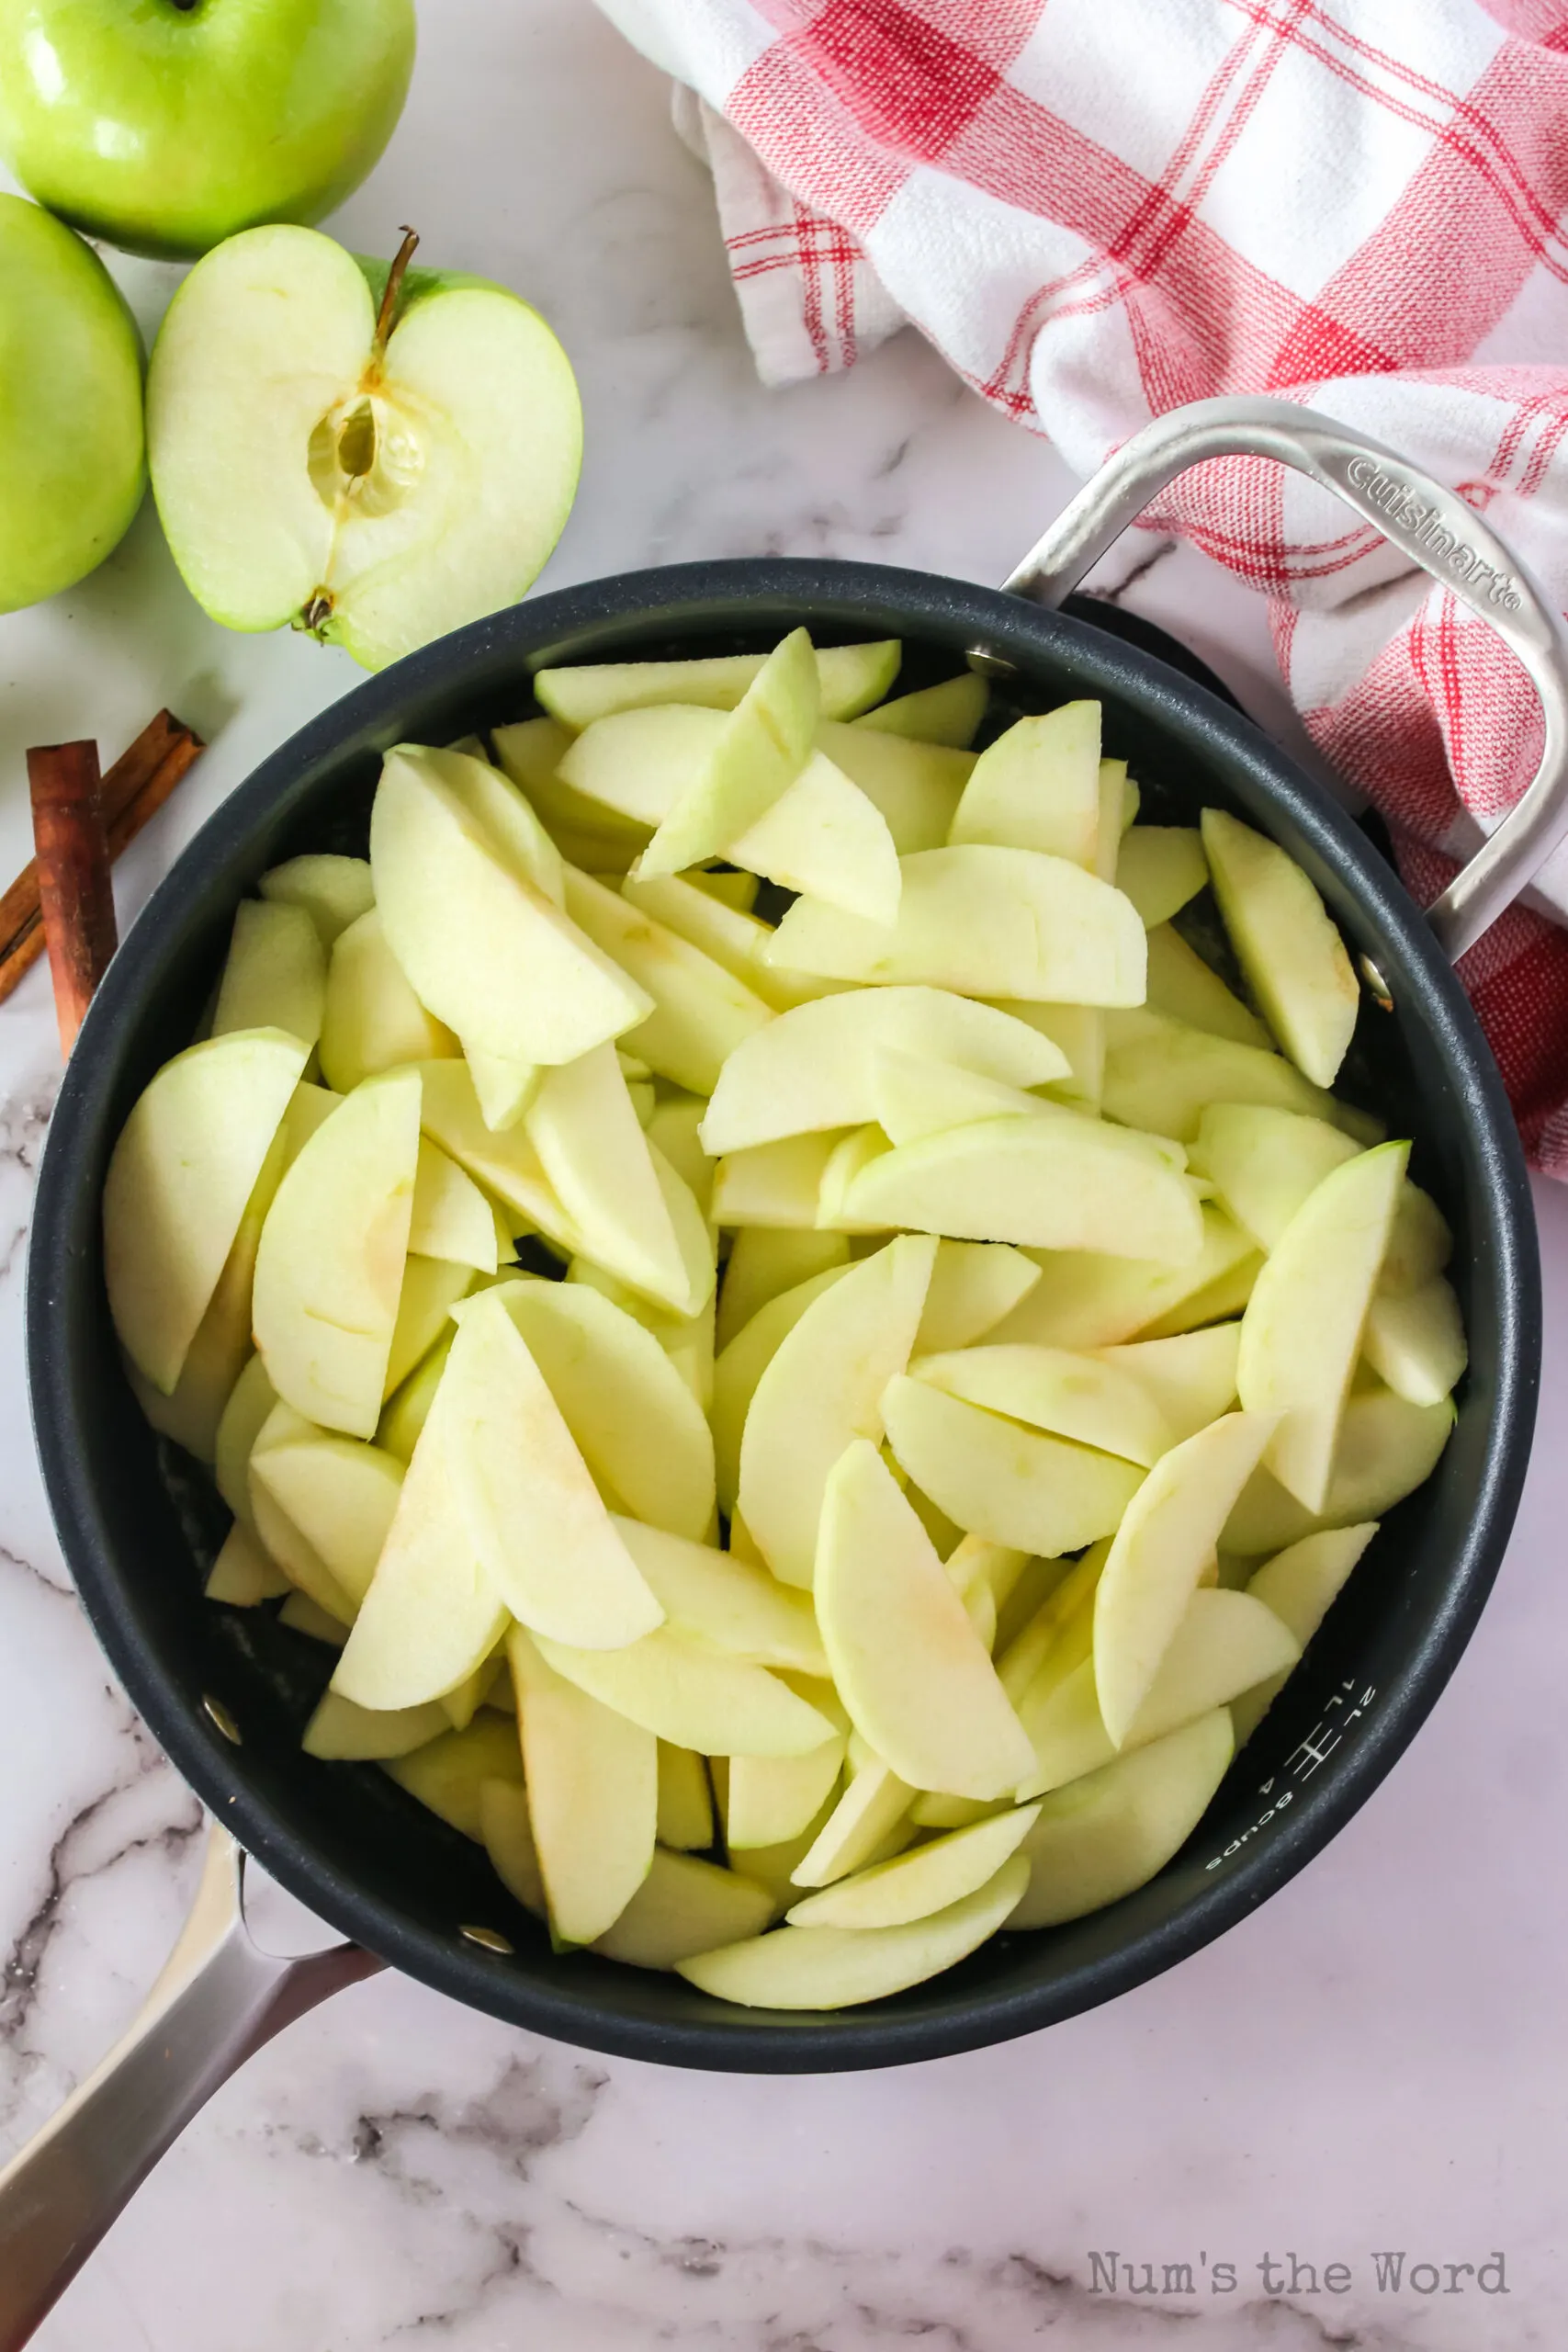 Sliced apples added to skillet